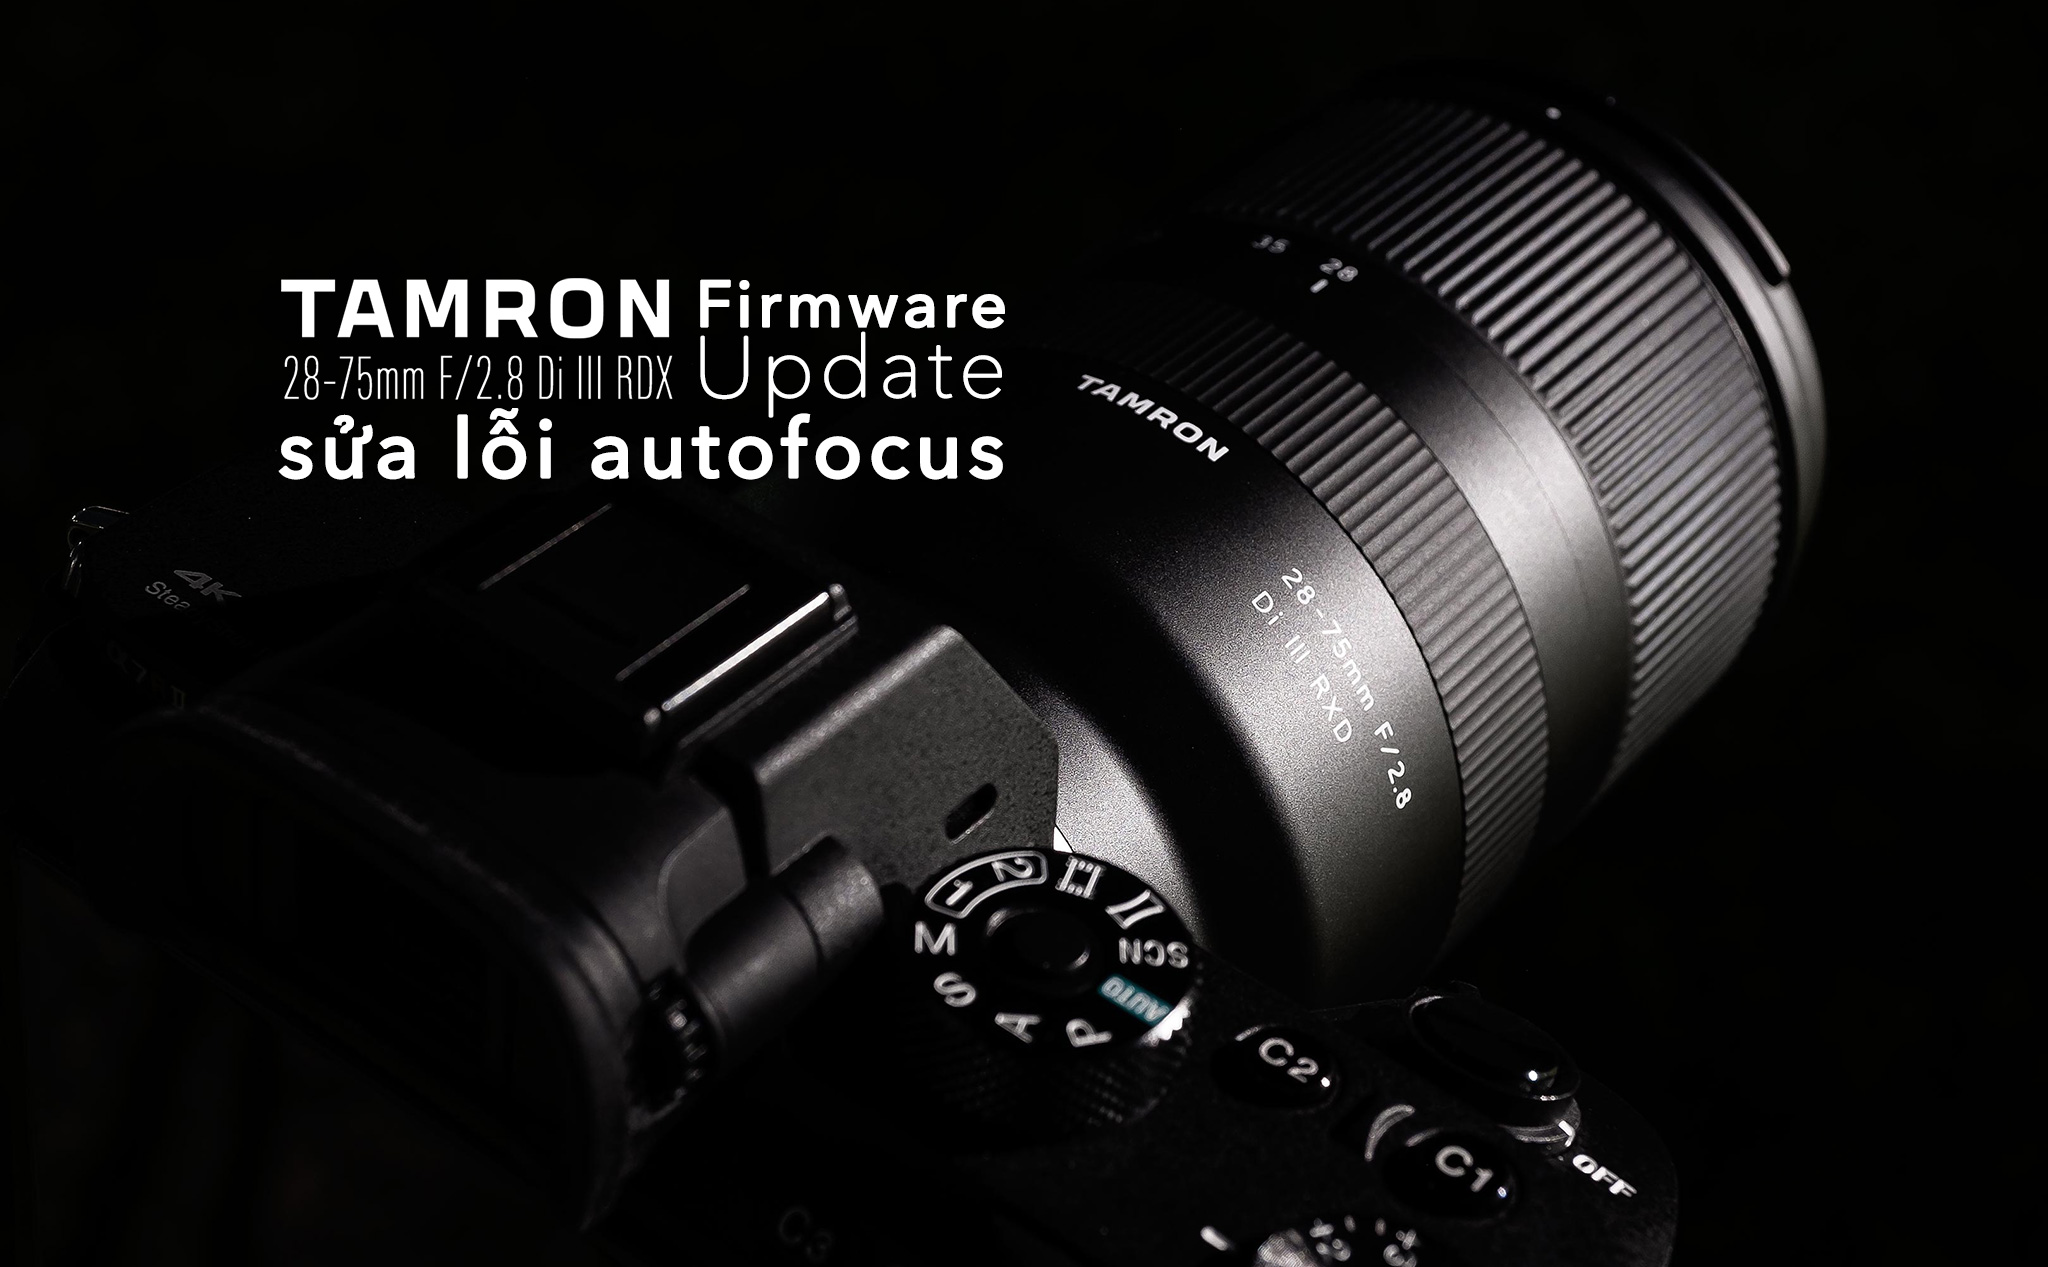 Tamron là thương hiệu ống kính nổi tiếng với chất lượng tuyệt vời. Xem hình ảnh liên quan đến Tamron để khám phá thêm về khả năng chụp ảnh tuyệt đỉnh với ống kính này.